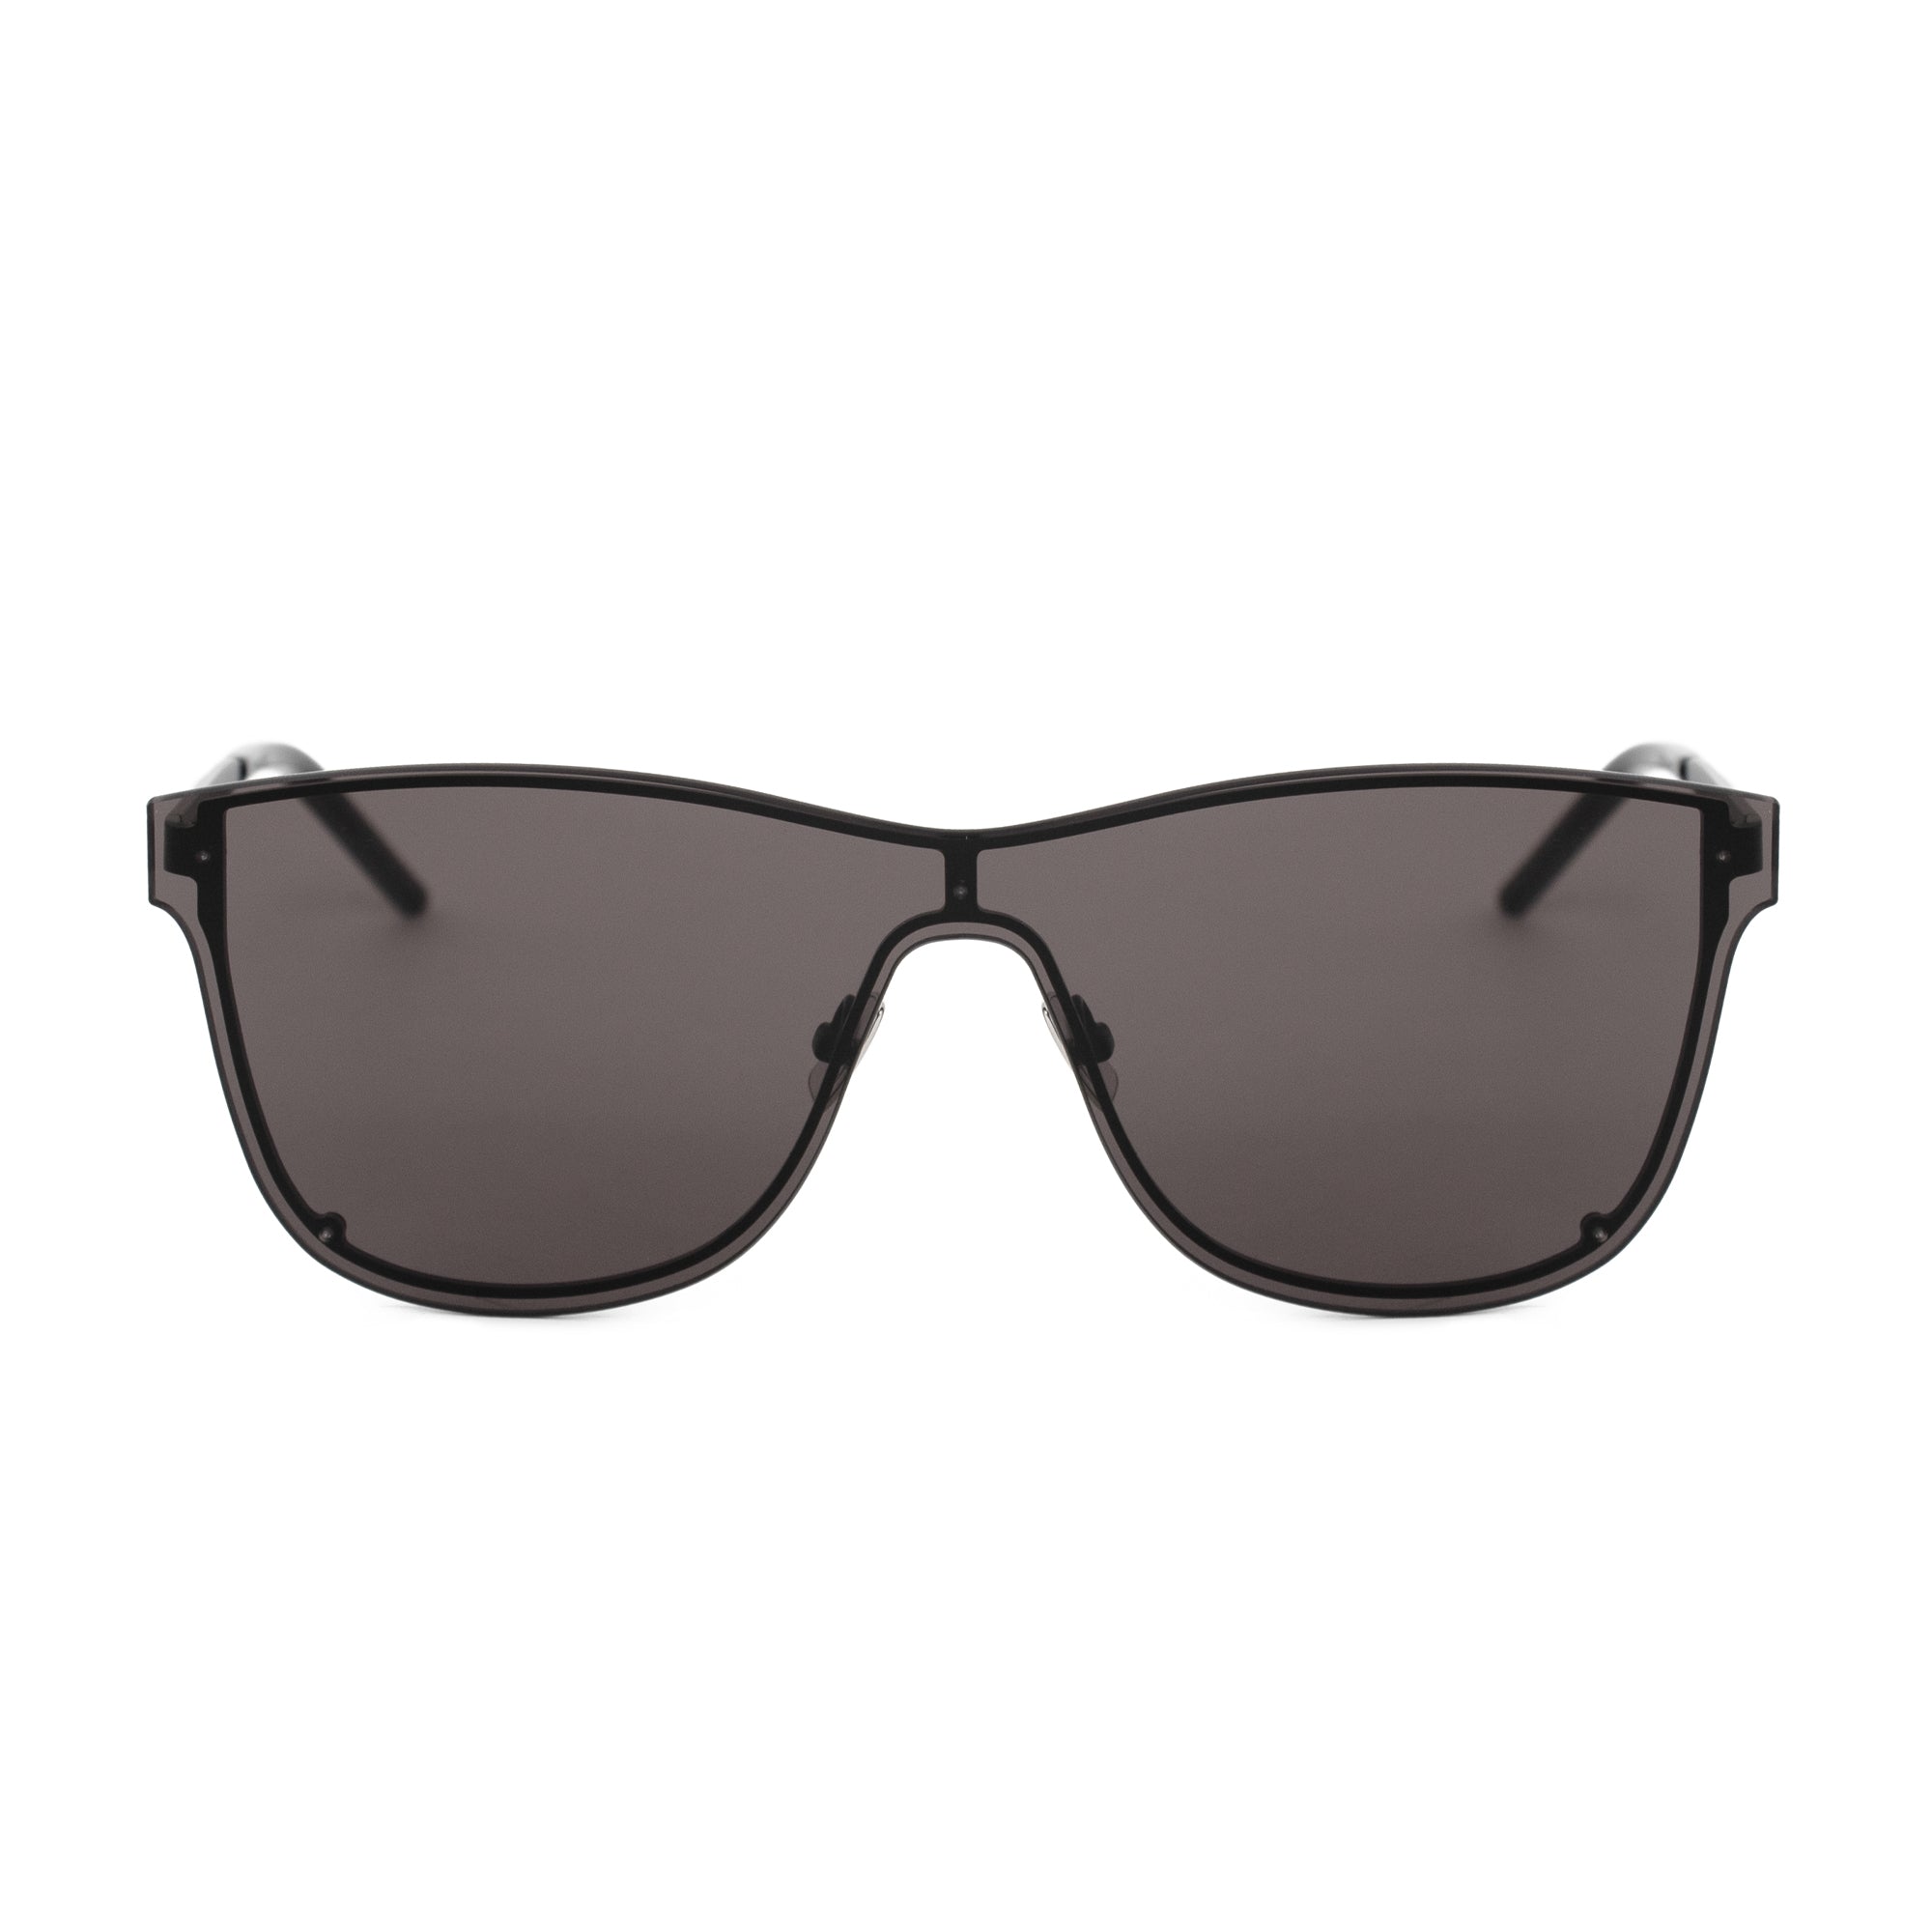 Saint Laurent Rectangular Sunglasses SL51 001 99